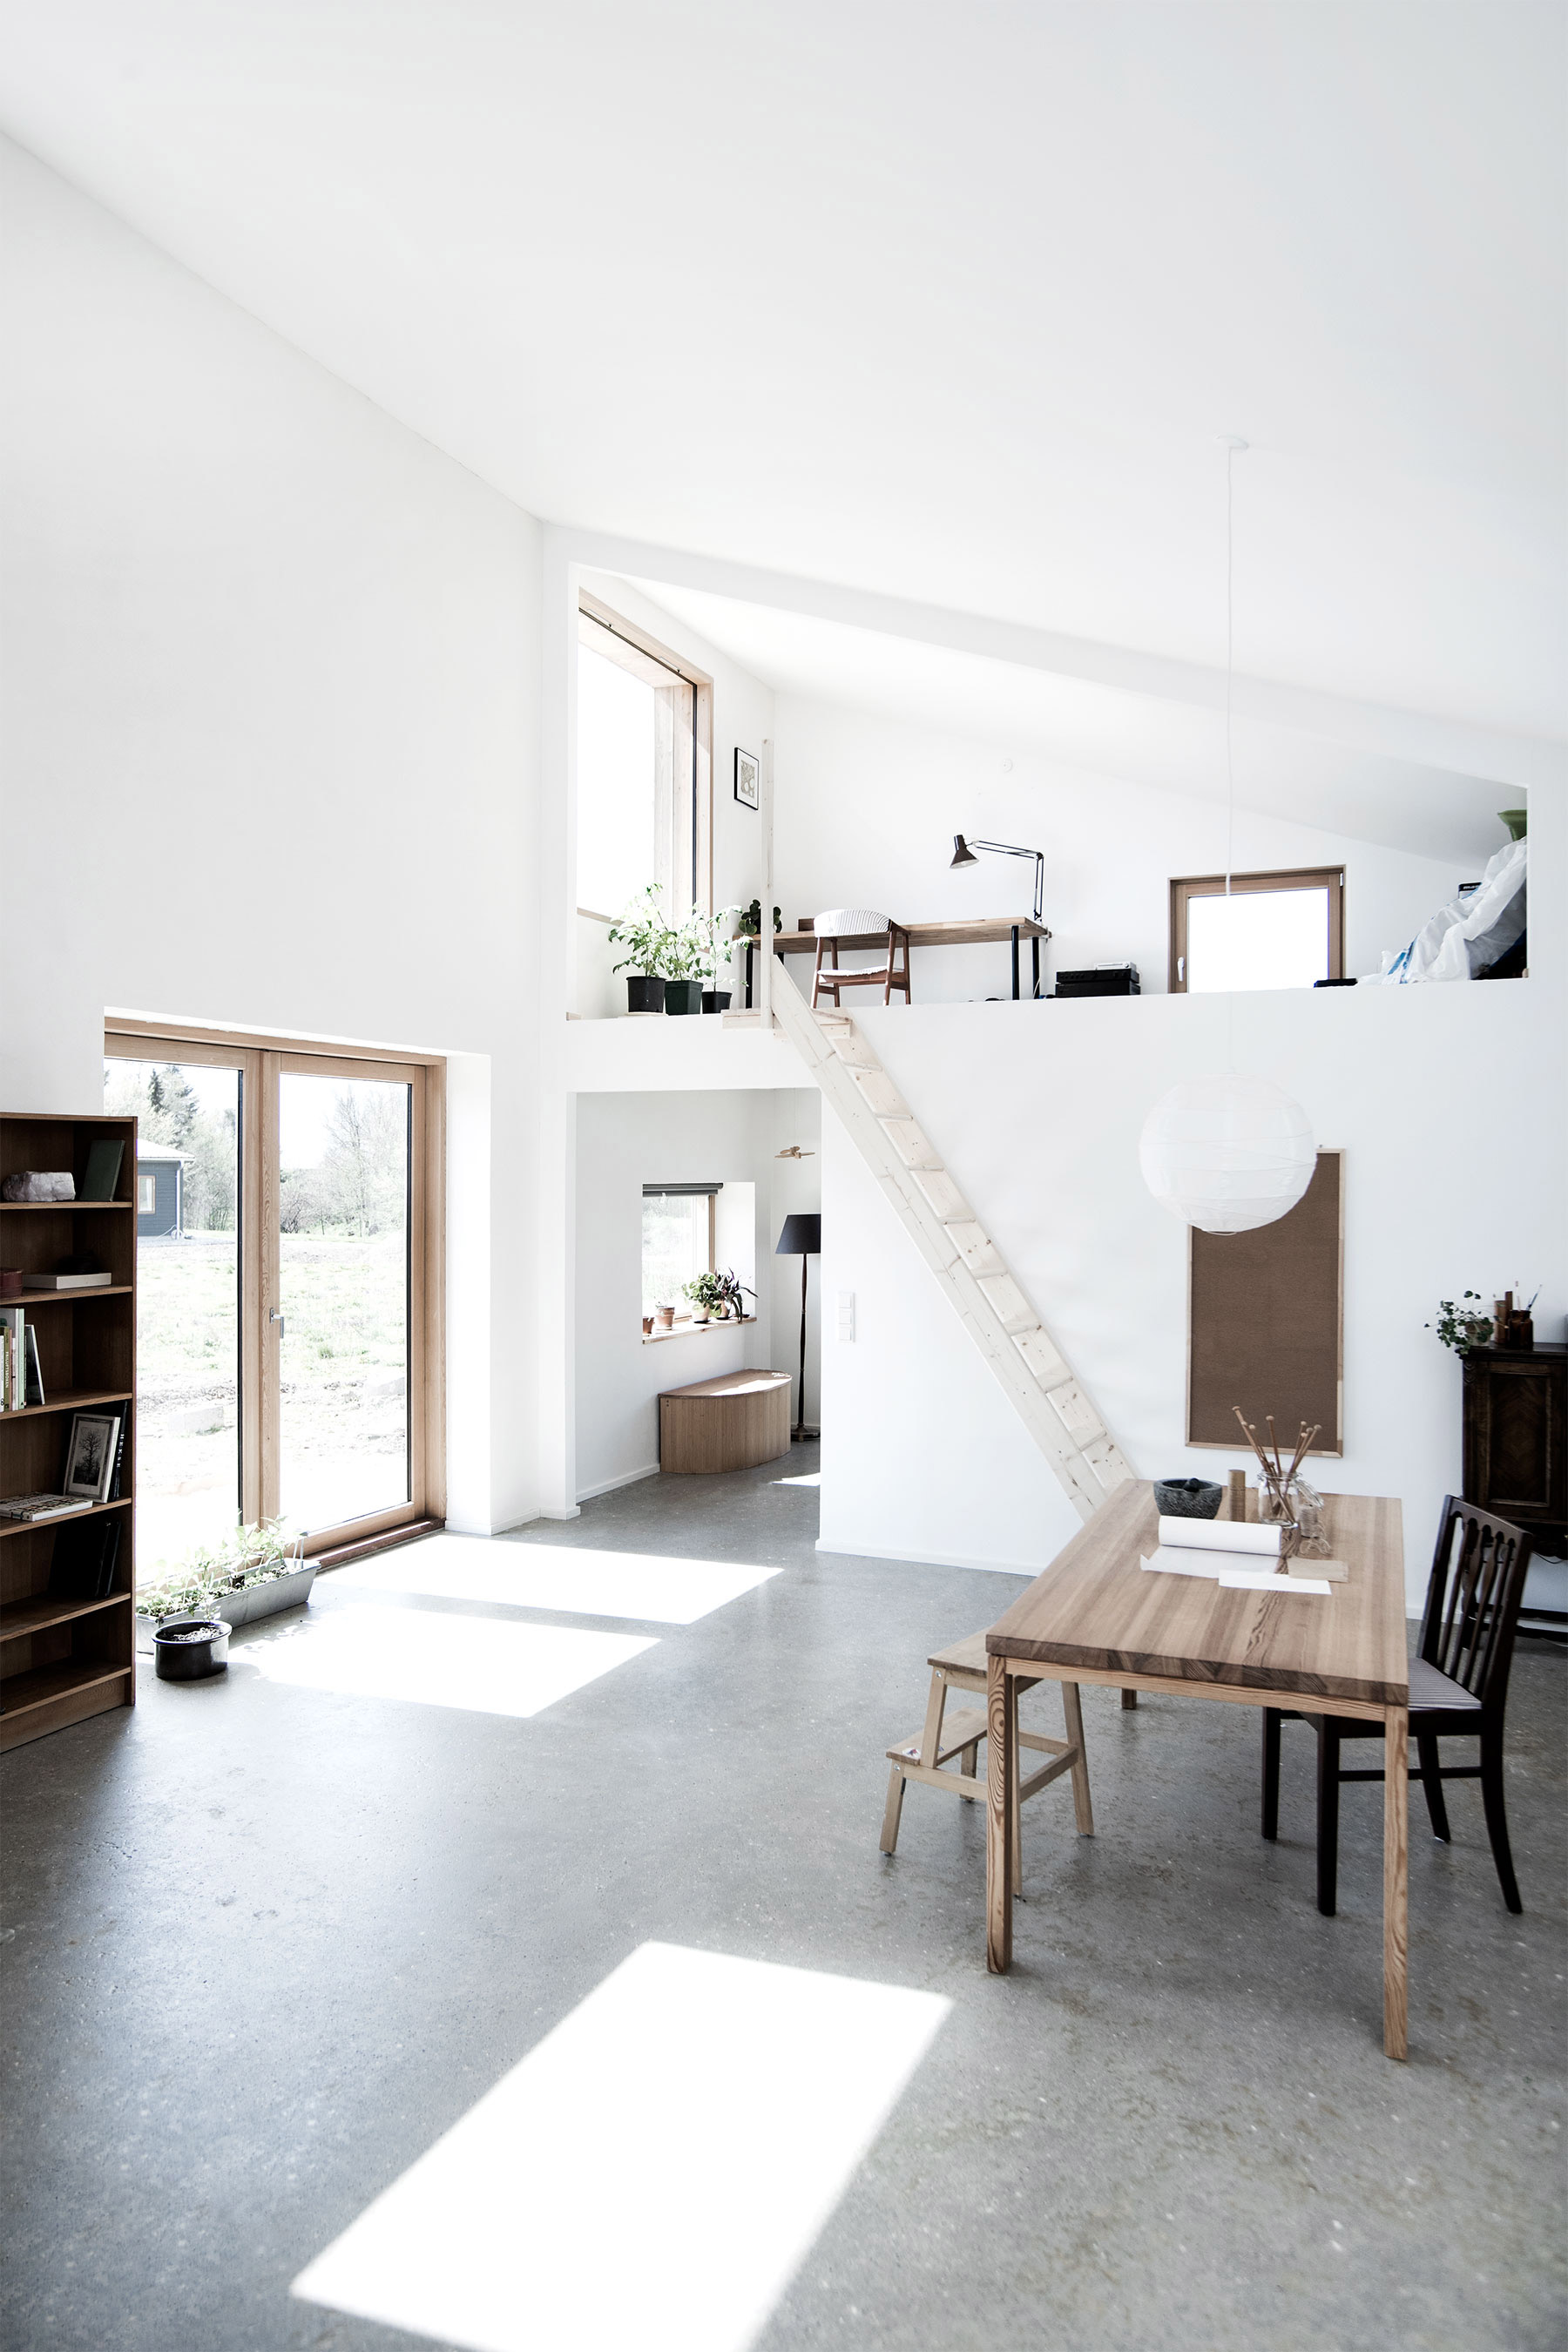 Sigurd Larsen Design Architecture Affordable Sustainablility  Eco House  byggeri Copenhagen wood 5